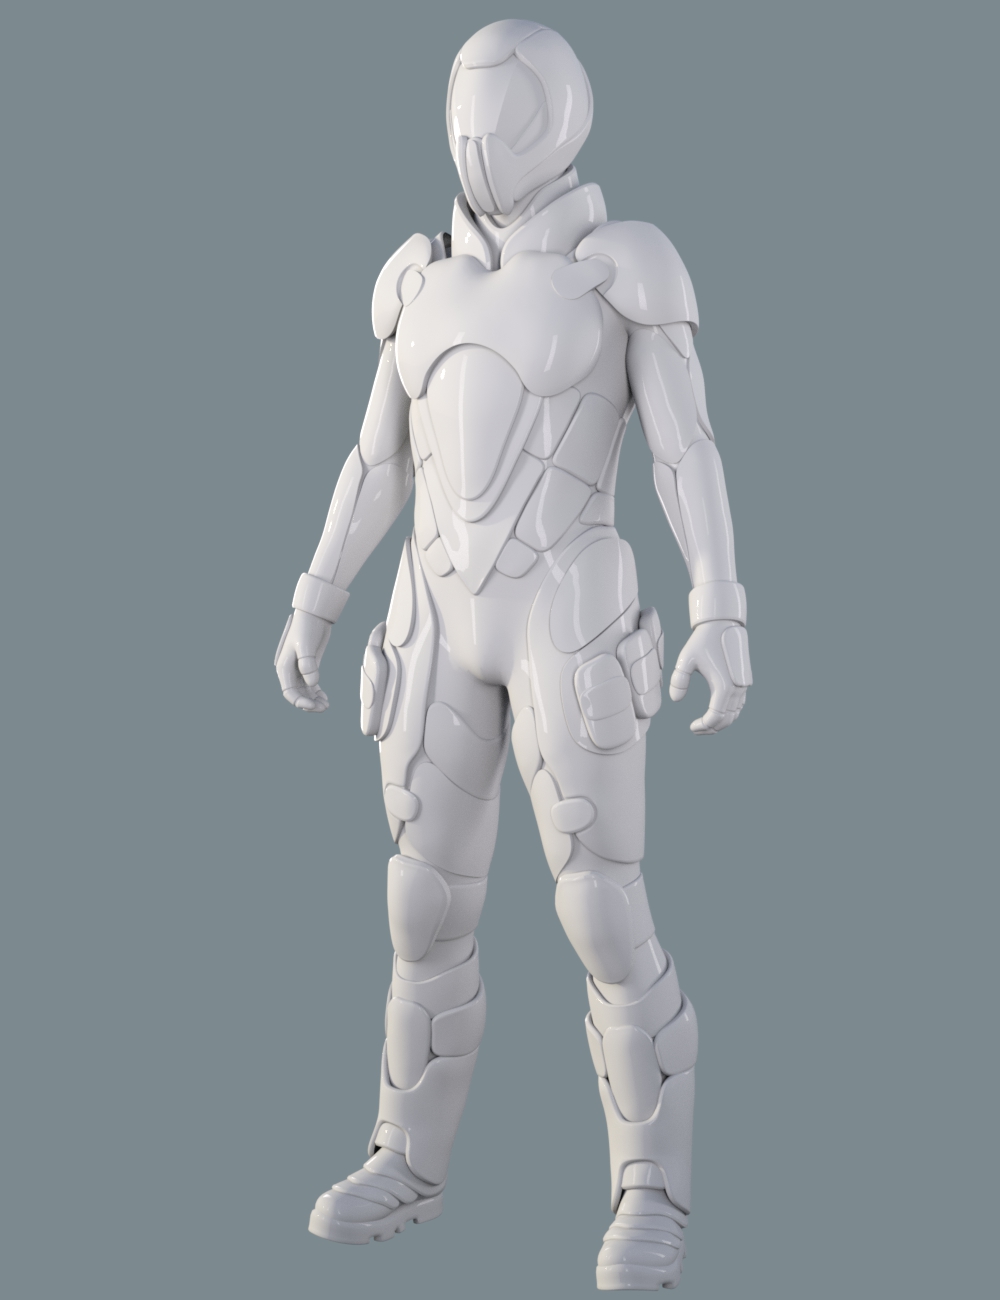 Sci-Fi Assault Armor for Genesis 8 Male(s) by: Yura, 3D Models by Daz 3D